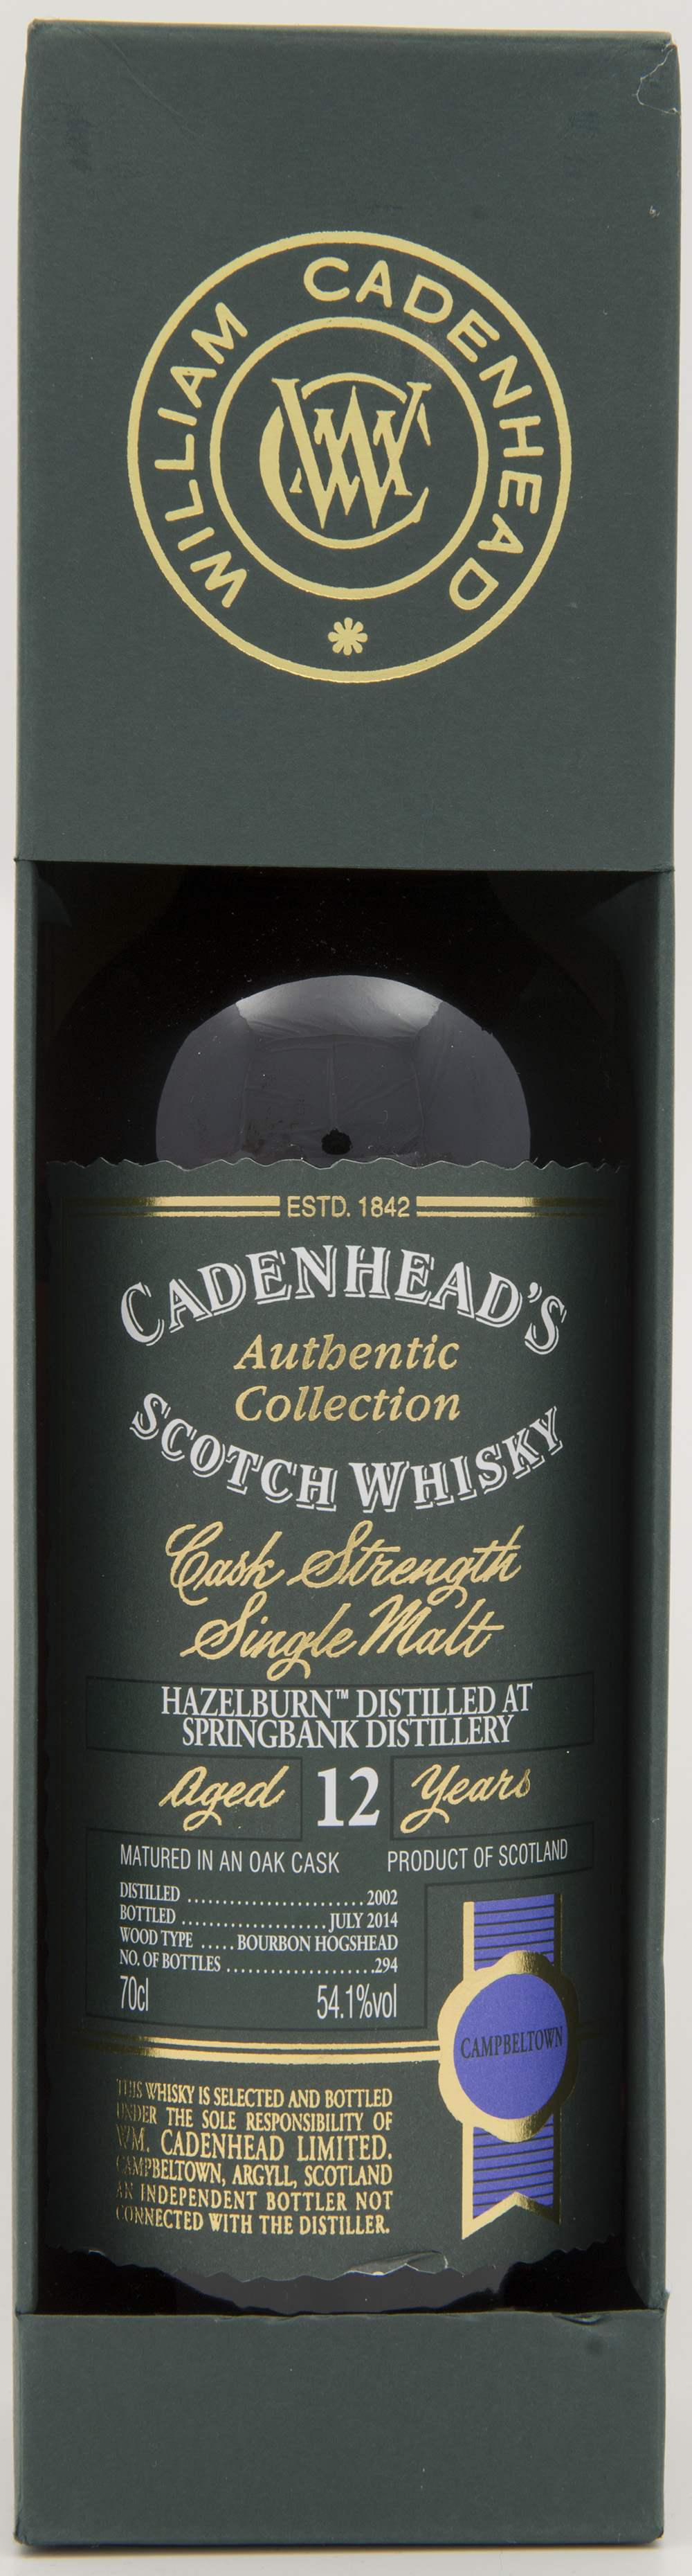 Billede: DSC_4824 Cadenheads Authentic Collection - Hazelburn 12 yers - 2002 - 2014 - bottle in box.jpg